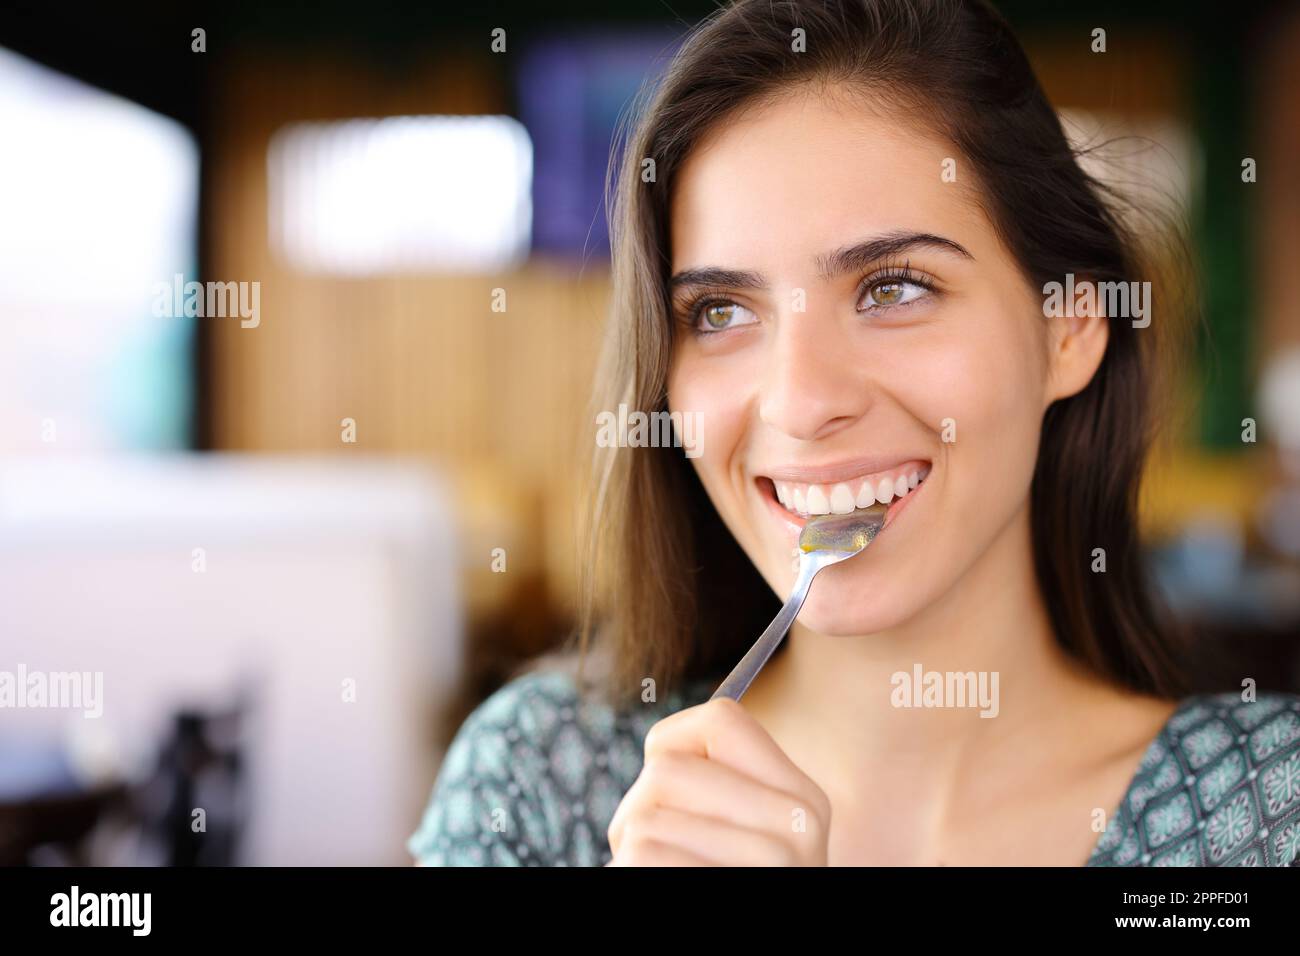 Eine glückliche Frau mit Löffel im Mund sieht in einem Restaurant weg Stockfoto